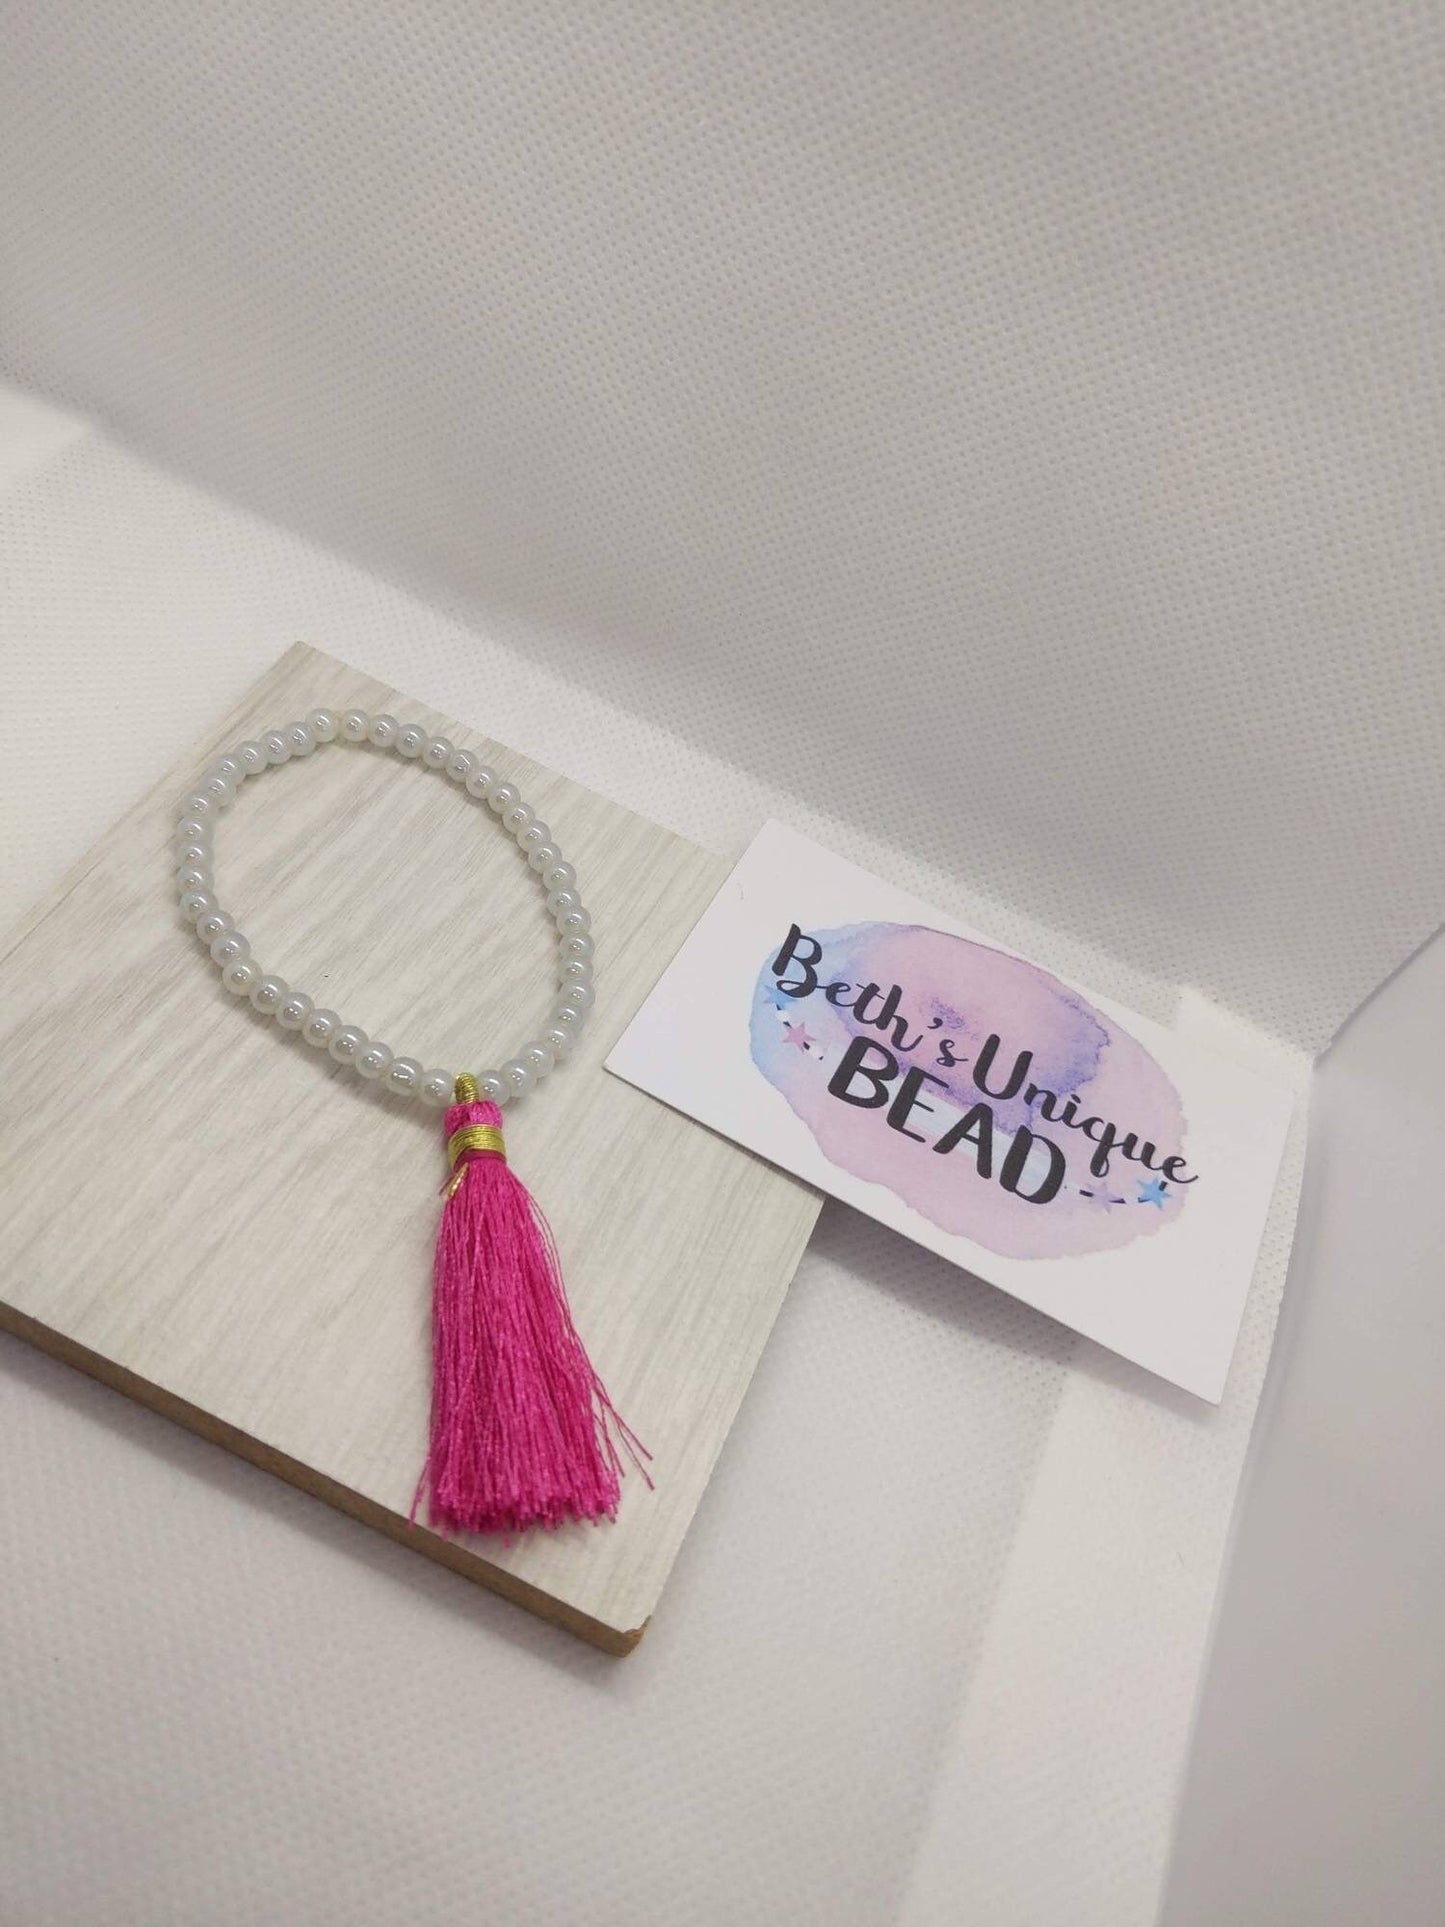 Beaded bracelet, tassel bracelet, gold bangle, pink bangle, white round beads, expandable arm candy